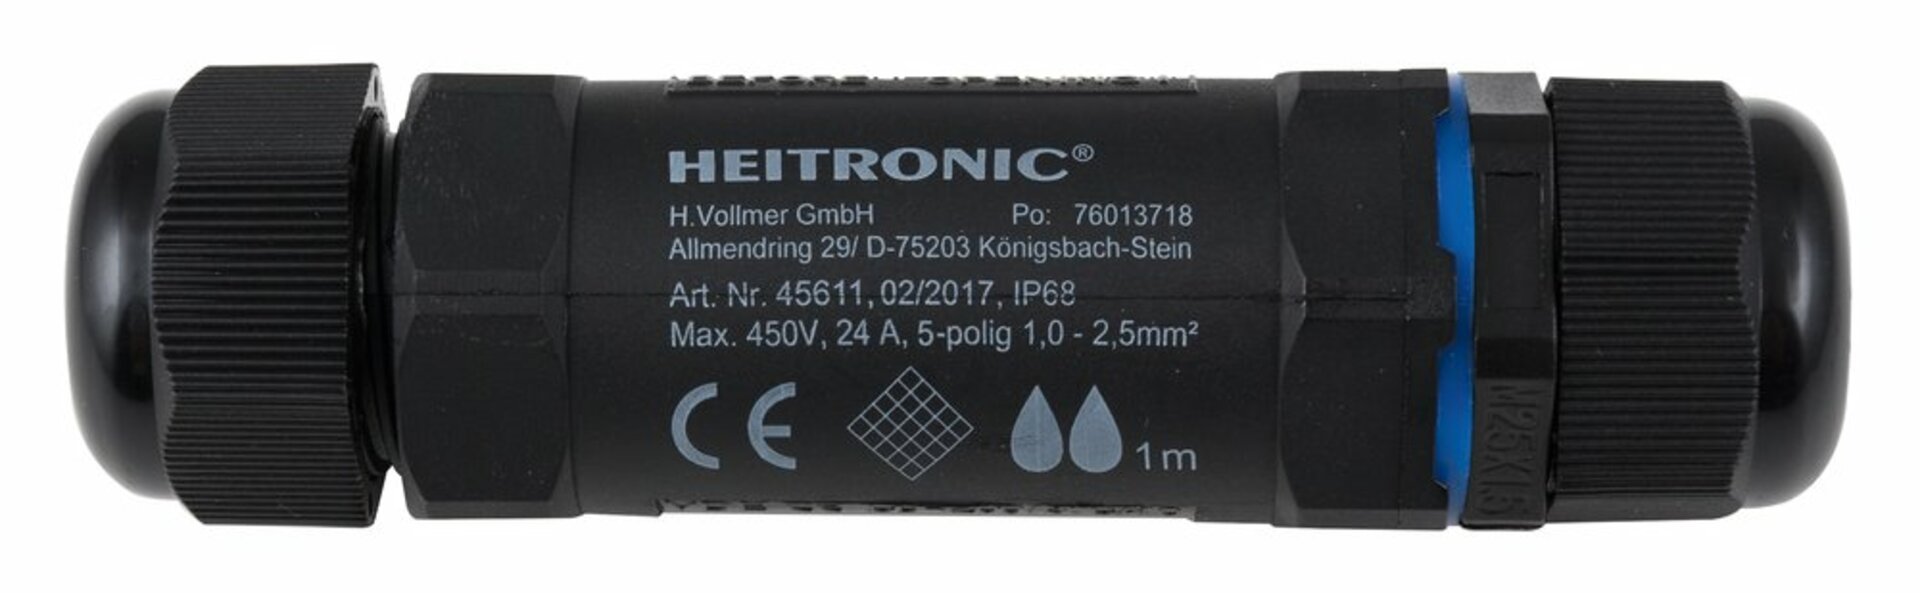 HEITRONIC kabelová spojka 5 pólová IP68 45611